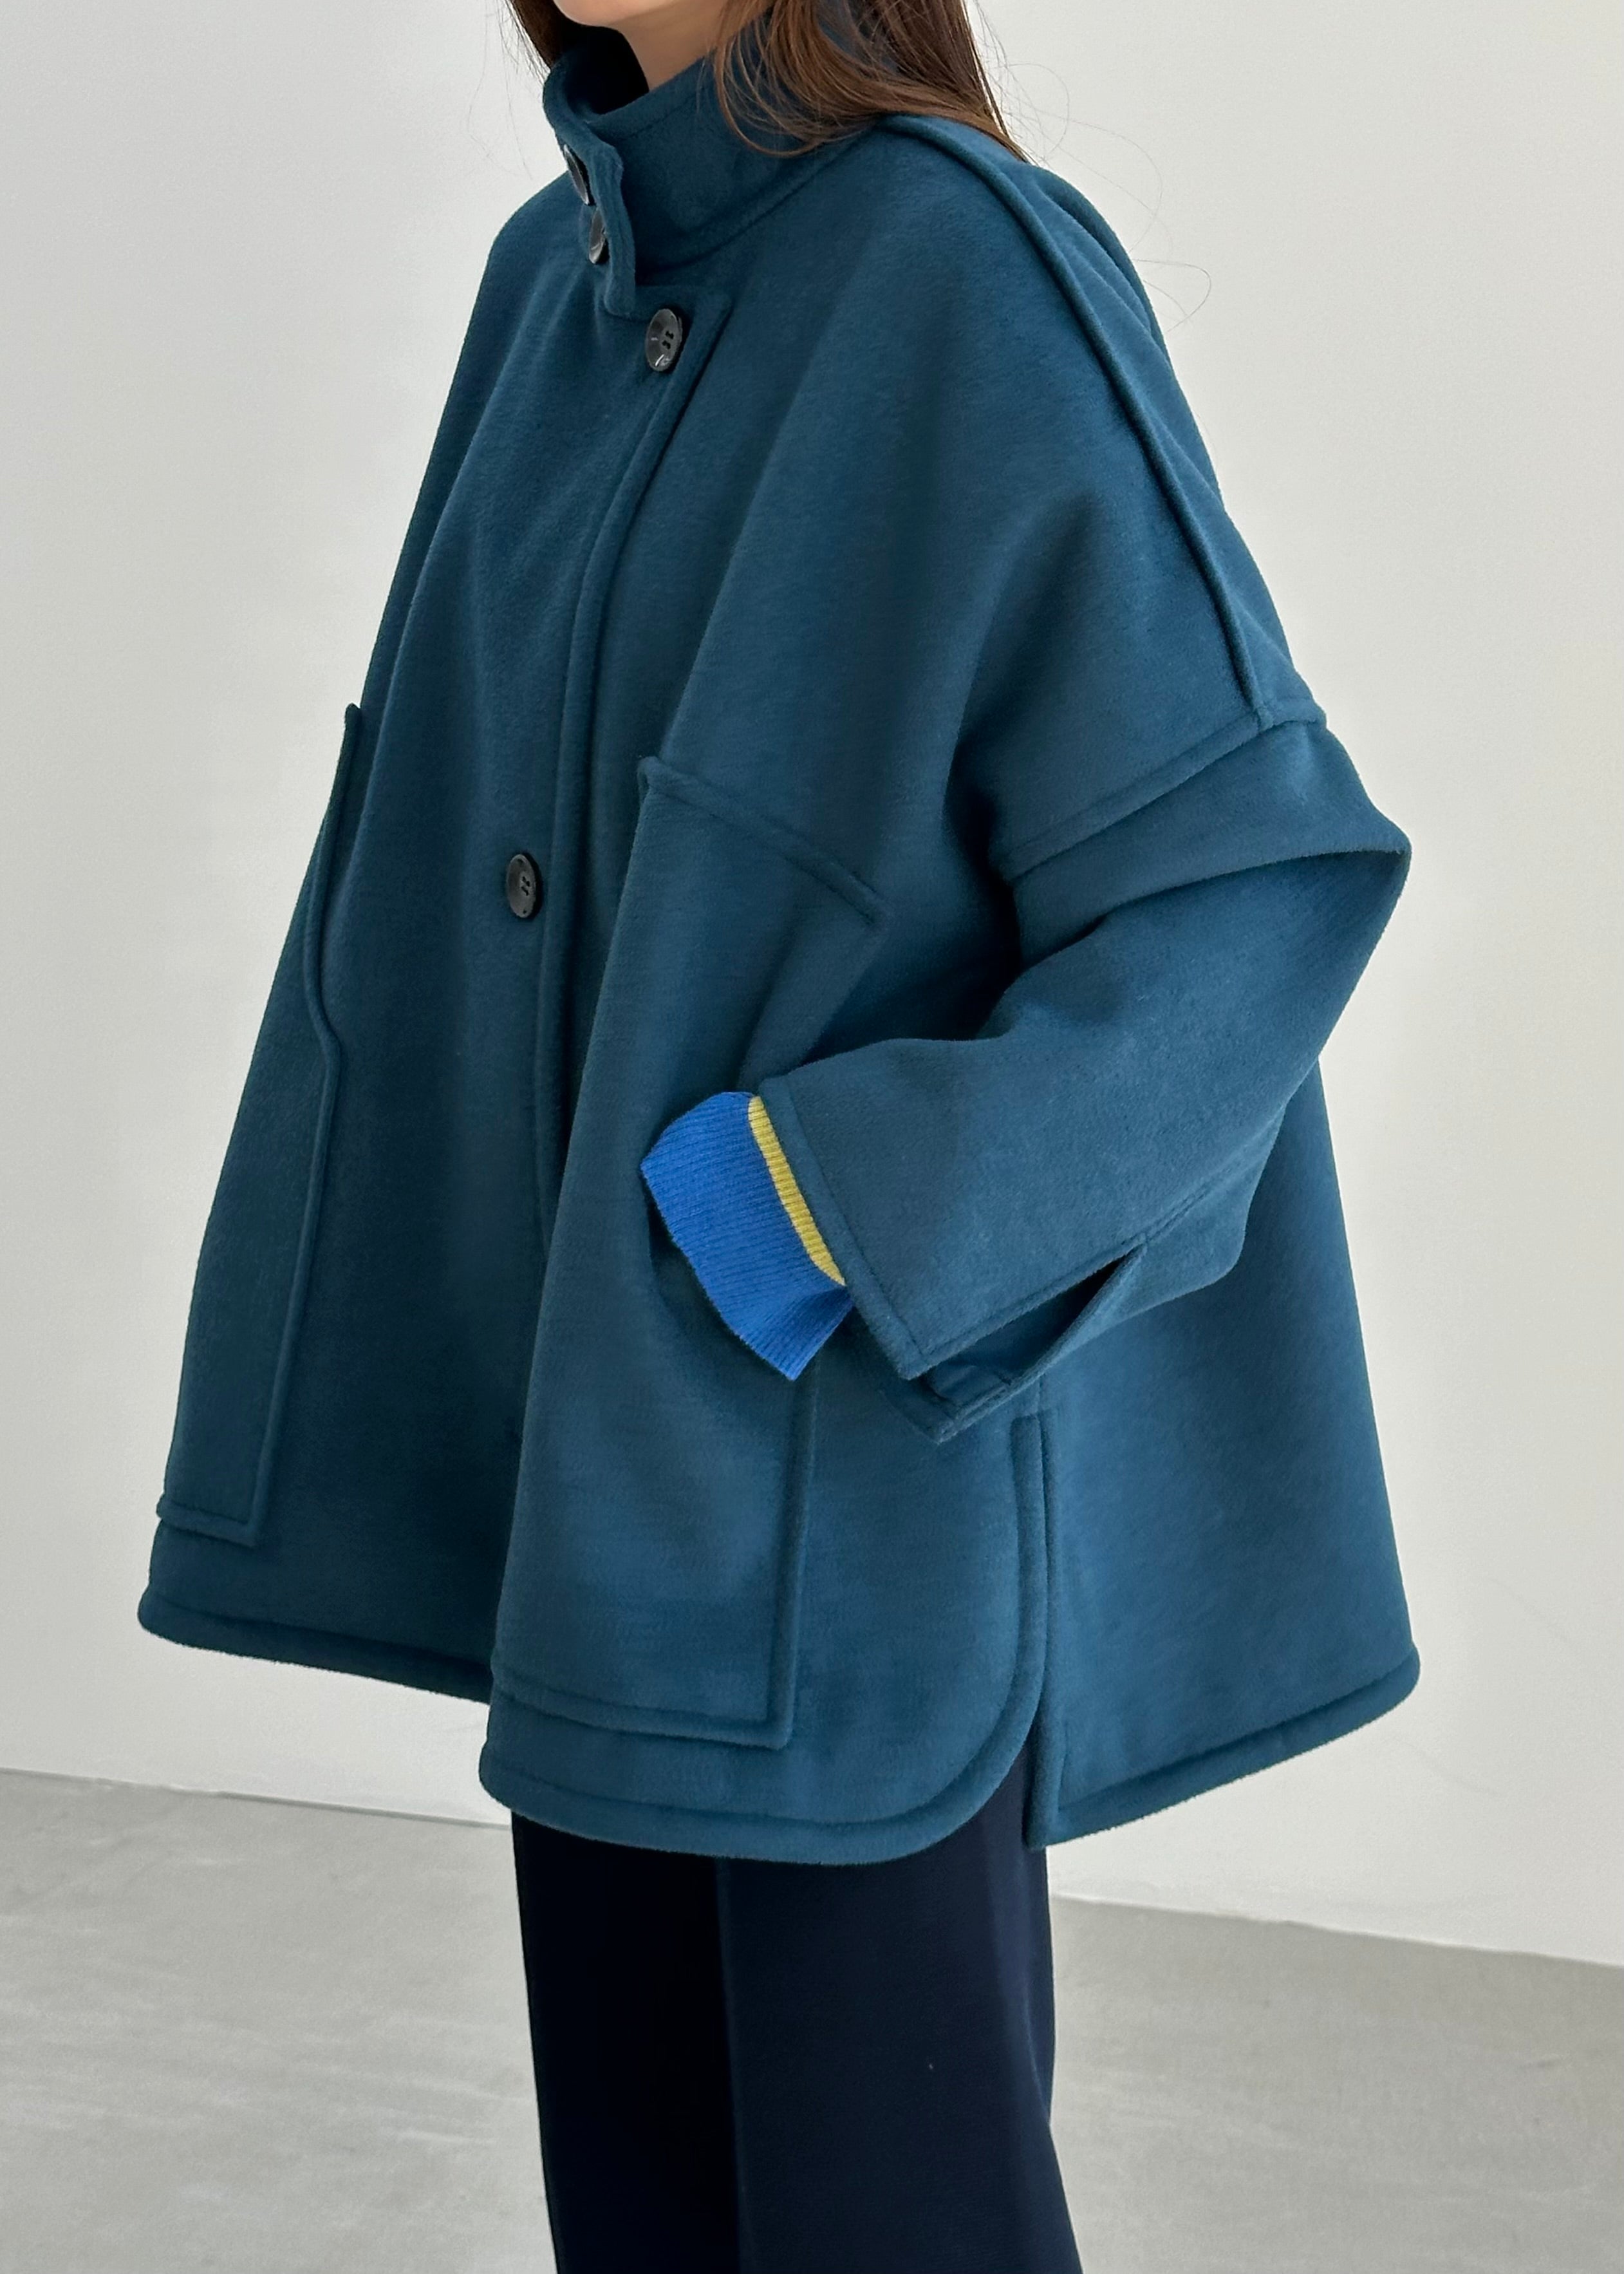 unof solid coat | camillevieraservices.com